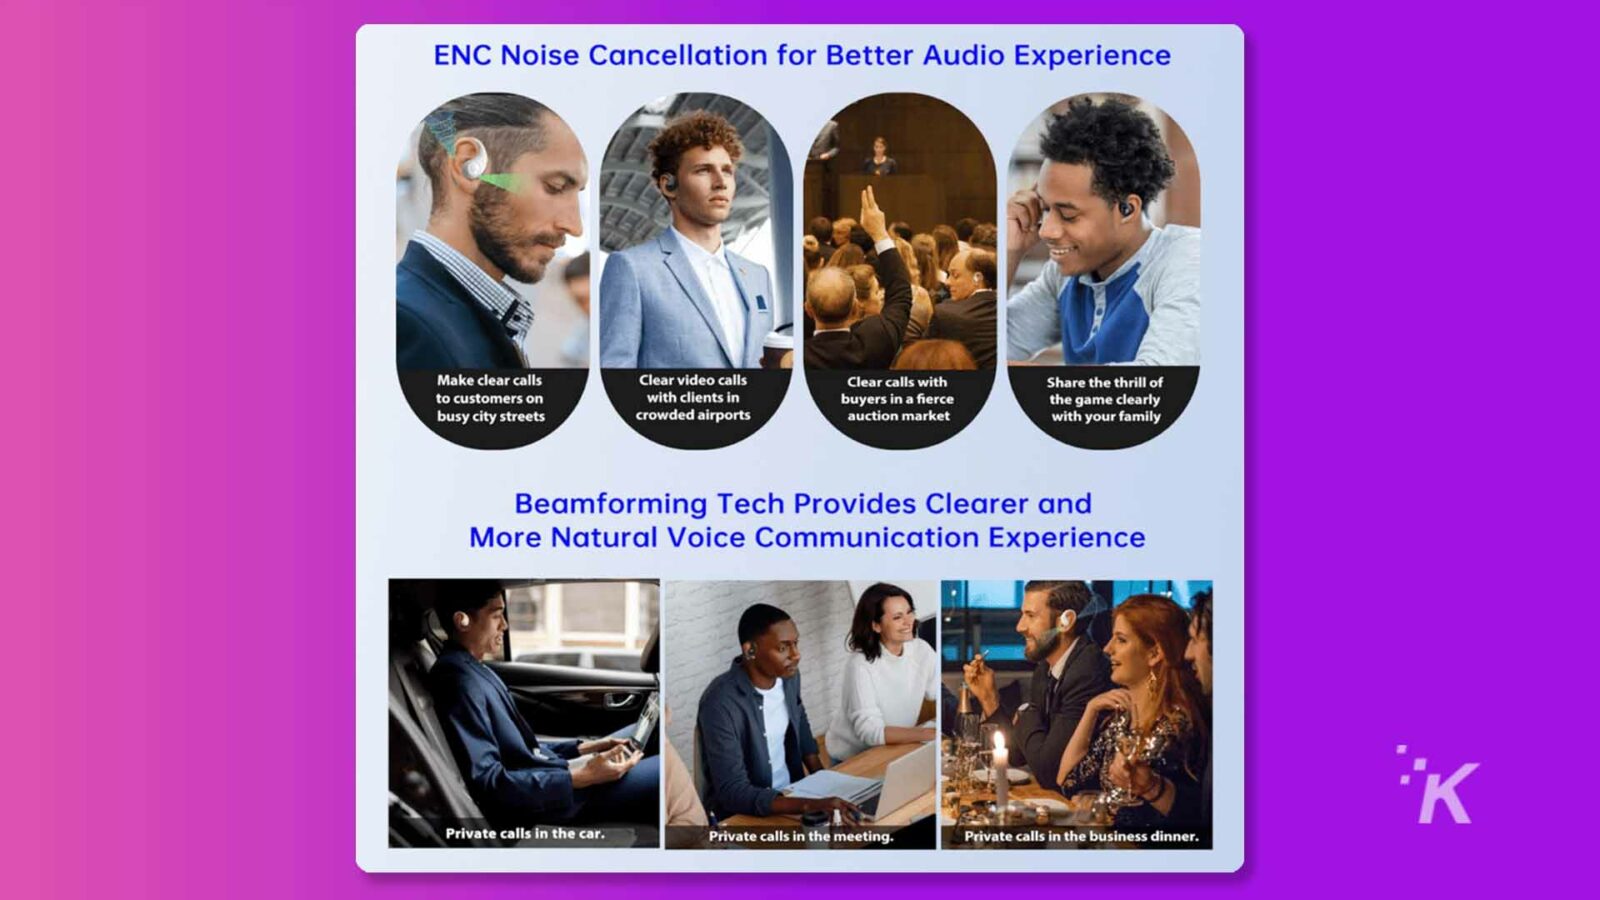 Ten obraz pokazuje, w jaki sposób technologia ENC Noise Cancellation zapewnia wyraźniejszą i bardziej naturalną komunikację głosową w różnych środowiskach, takich jak ruchliwe ulice miast, zatłoczone lotniska, prywatne rozmowy w samochodzie, spotkania lub kolacje biznesowe. Pełny tekst: ENC Redukcja szumów zapewnia lepsze wrażenia dźwiękowe Wyraźne rozmowy Wyraźne rozmowy wideo Dziel się emocjami z klientami na z klientami w Wyraźne rozmowy z ruchliwymi ulicami miast Kupujący w zaciekłej grze wyraźnie zatłoczone lotniska aukcyjne z rodziną Technologia kształtowania wiązki zapewnia wyraźniejszy i więcej Natural Voice Communication Experience Prywatne rozmowy w samochodzie. Prywatne rozmowy na spotkaniu. Prywatne rozmowy podczas kolacji biznesowej.